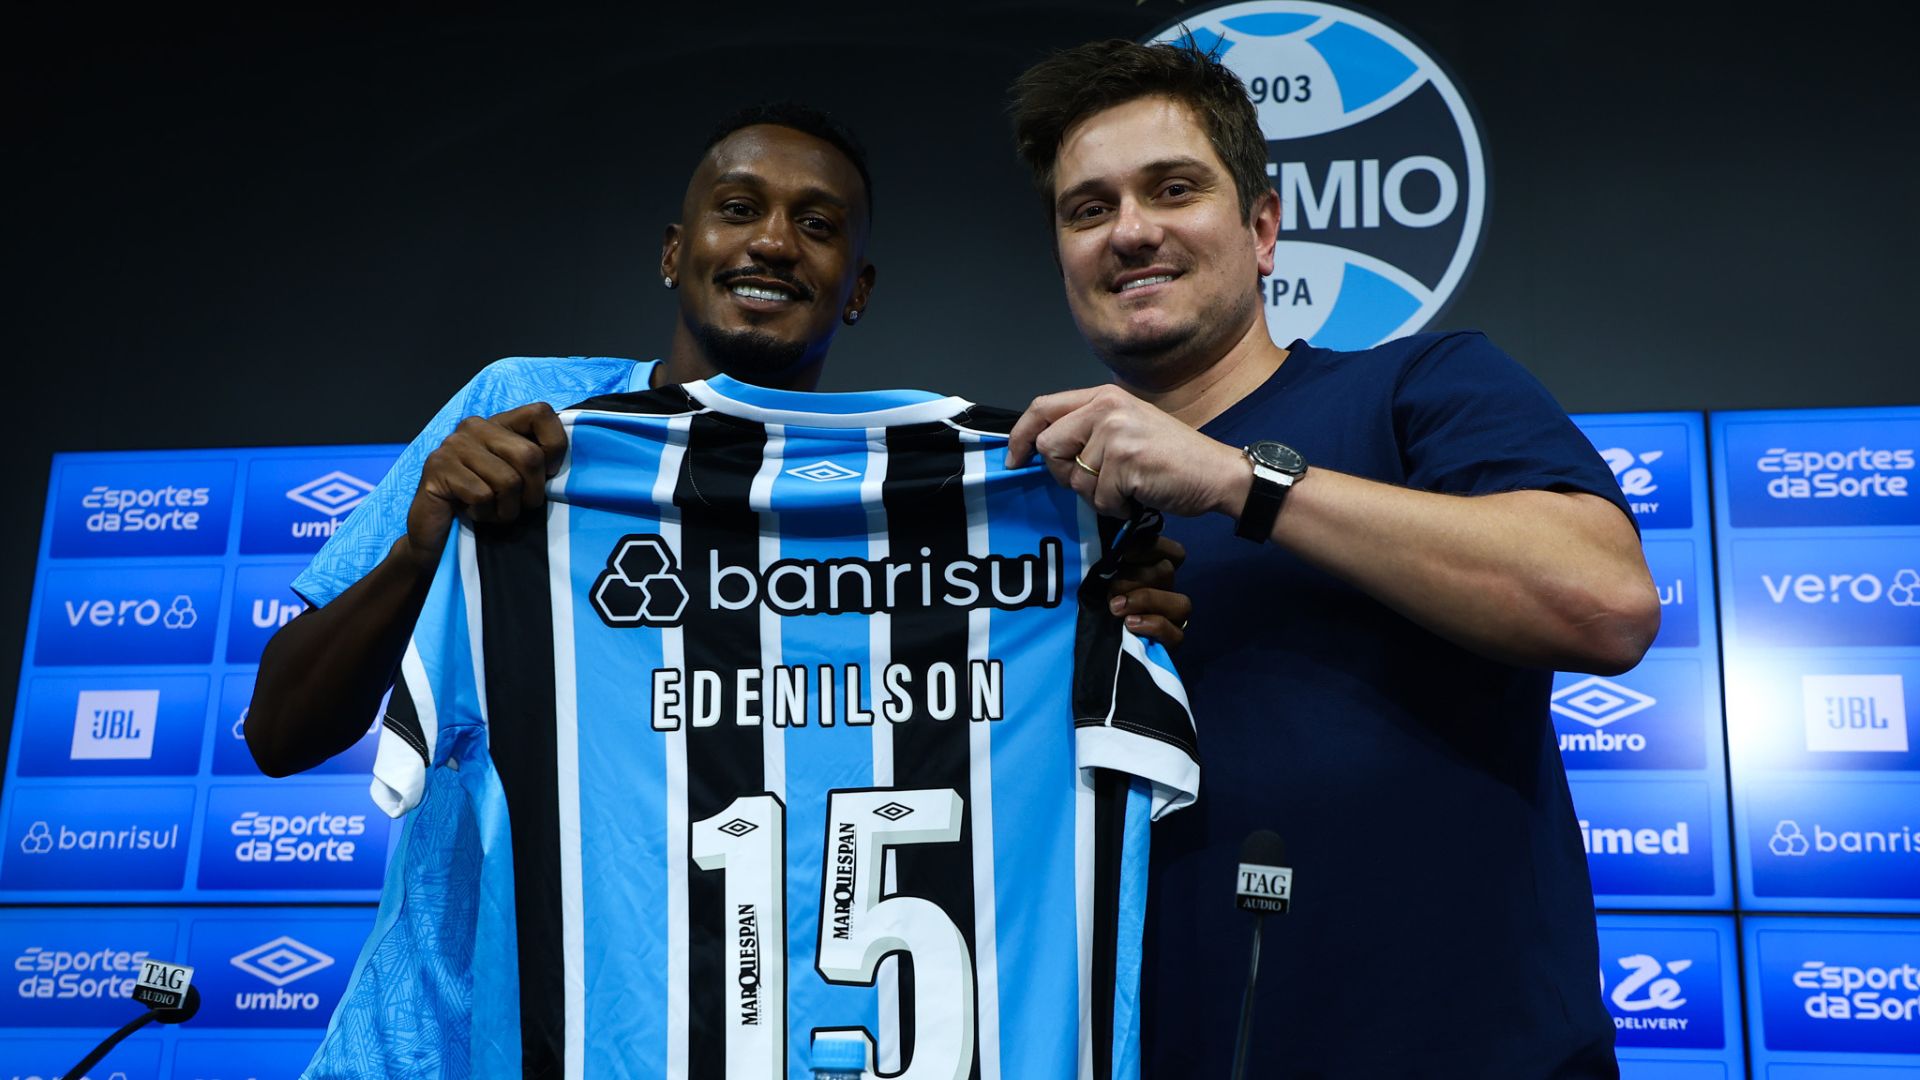 Edenilson é o novo camisa 15 do Grêmio (Crédito: Rodrigo Fatturi / Grêmio)